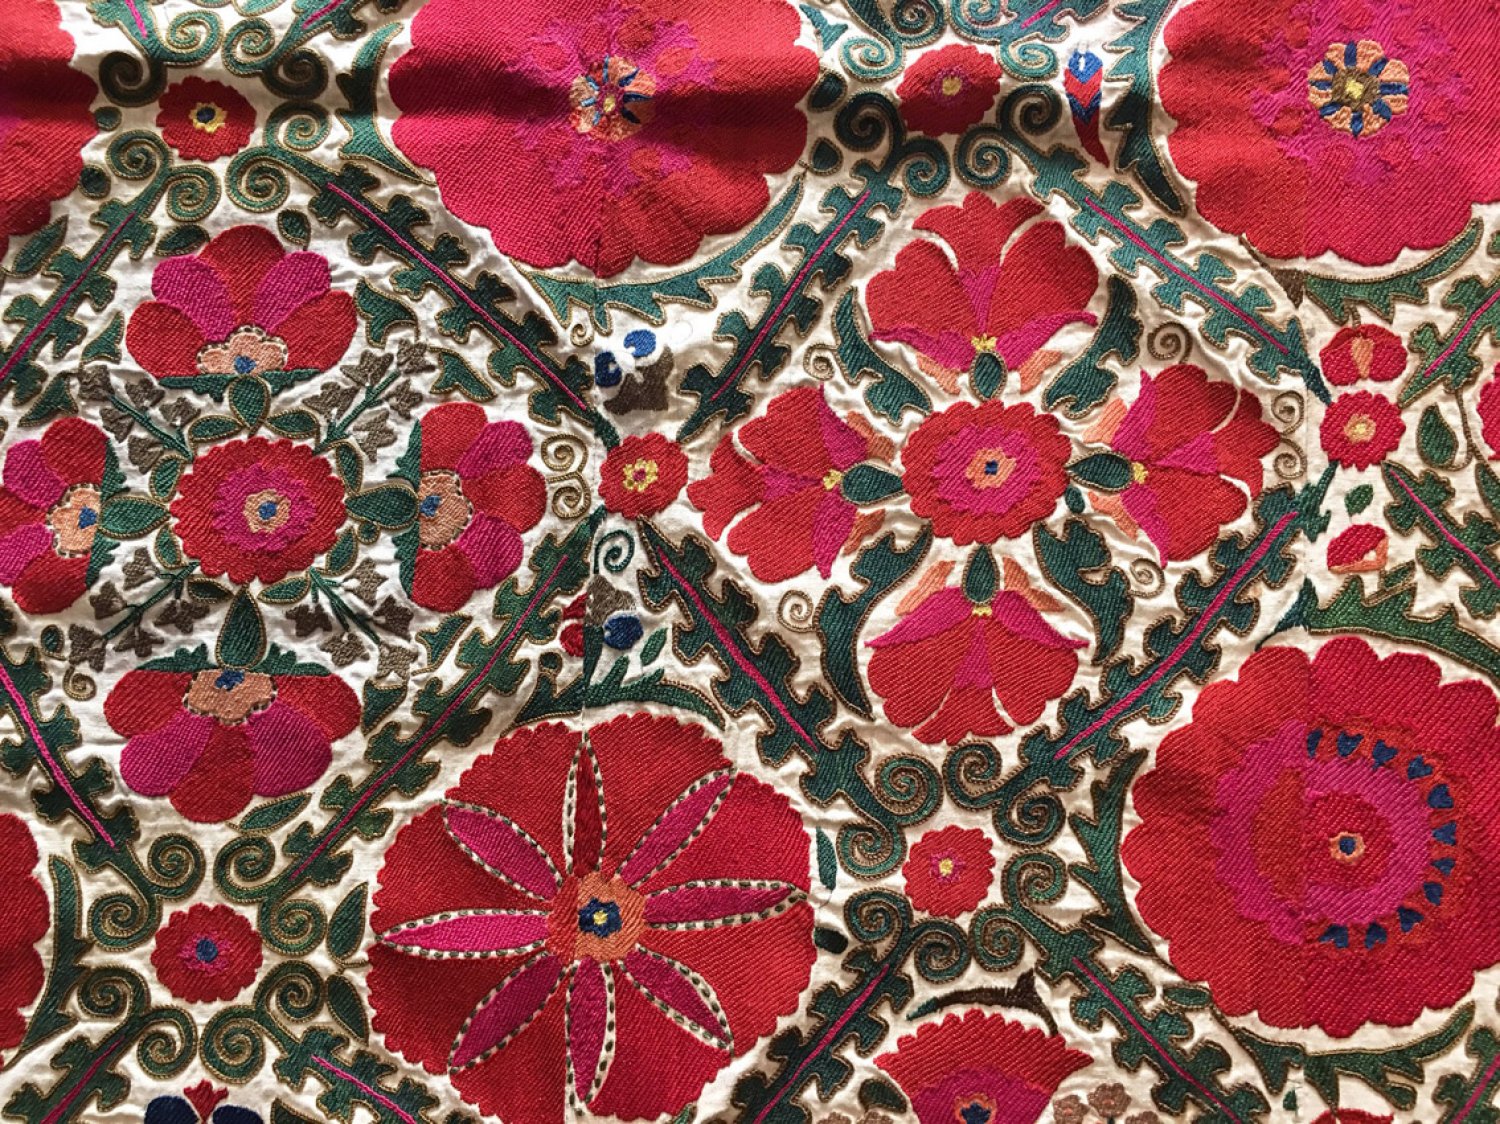 Bokhara Suzani, embroidery from Uzbekistan